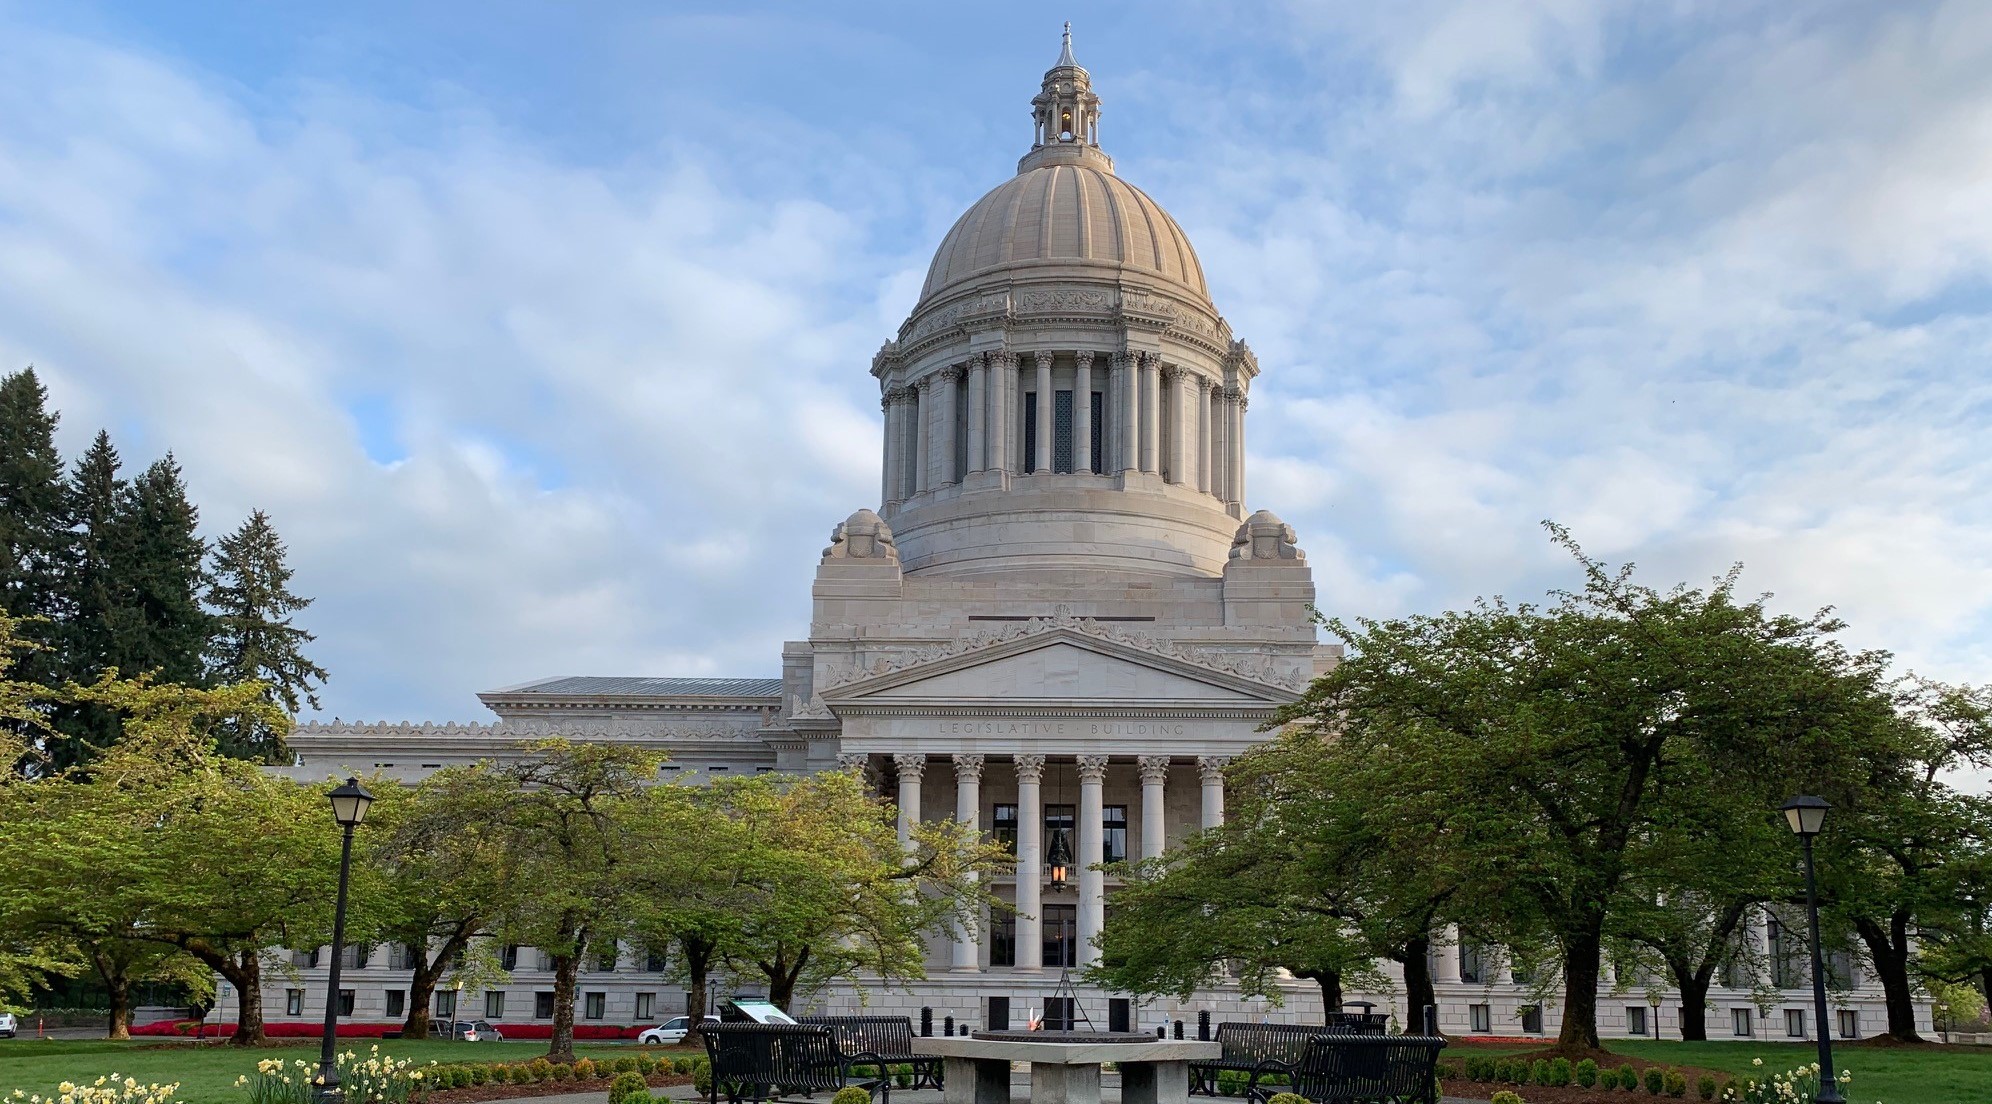 Image of Washington State Capital